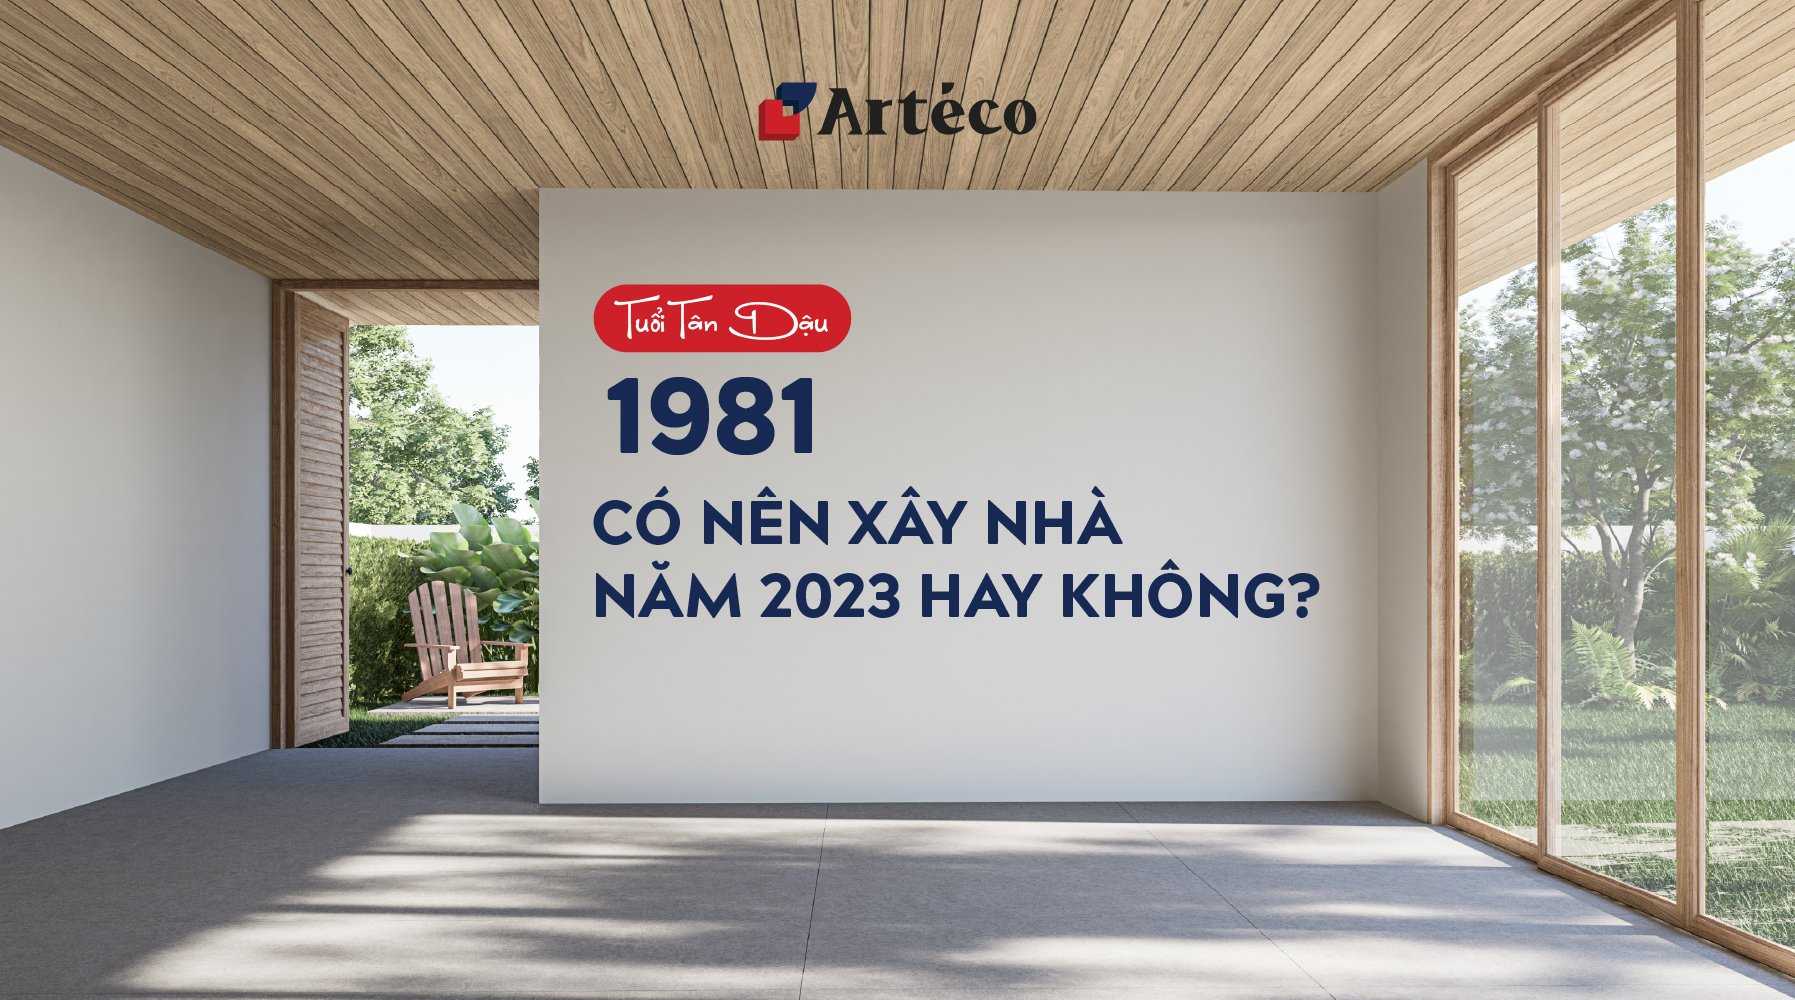 Arteco - 1981 xây nhà năm 2023